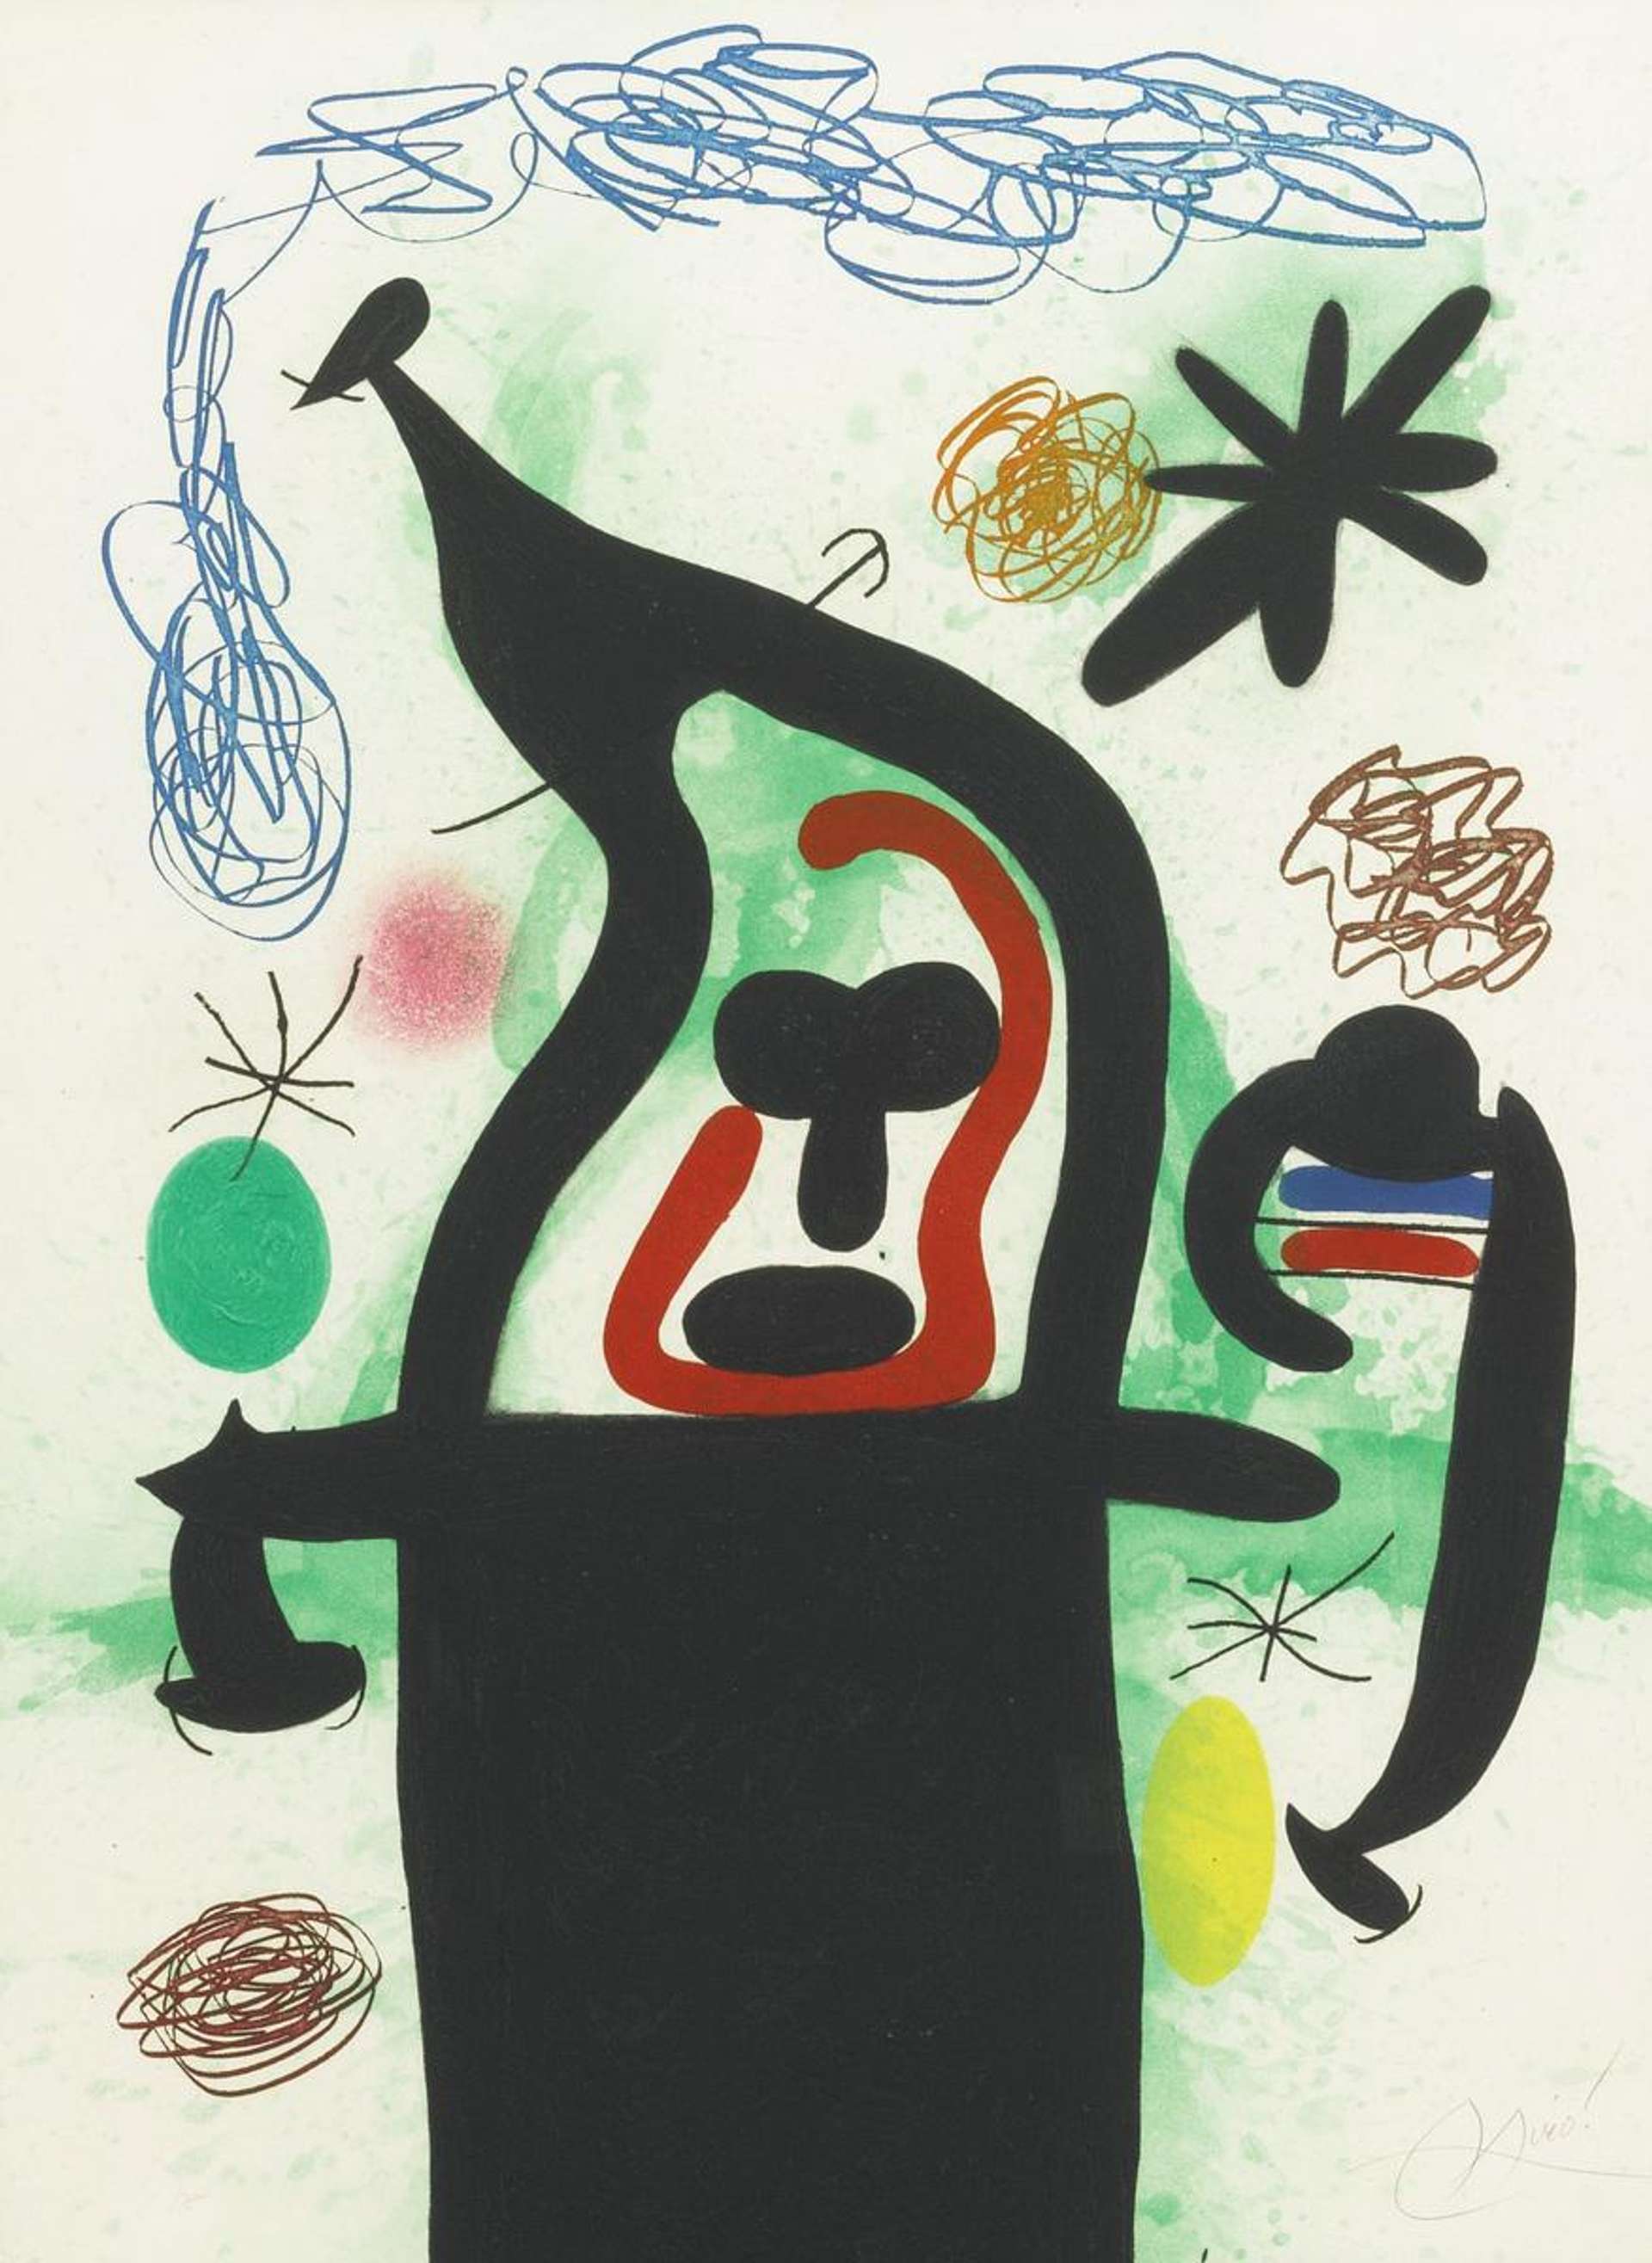 La Harpie - Signed Print by Joan Miró 1969 - MyArtBroker